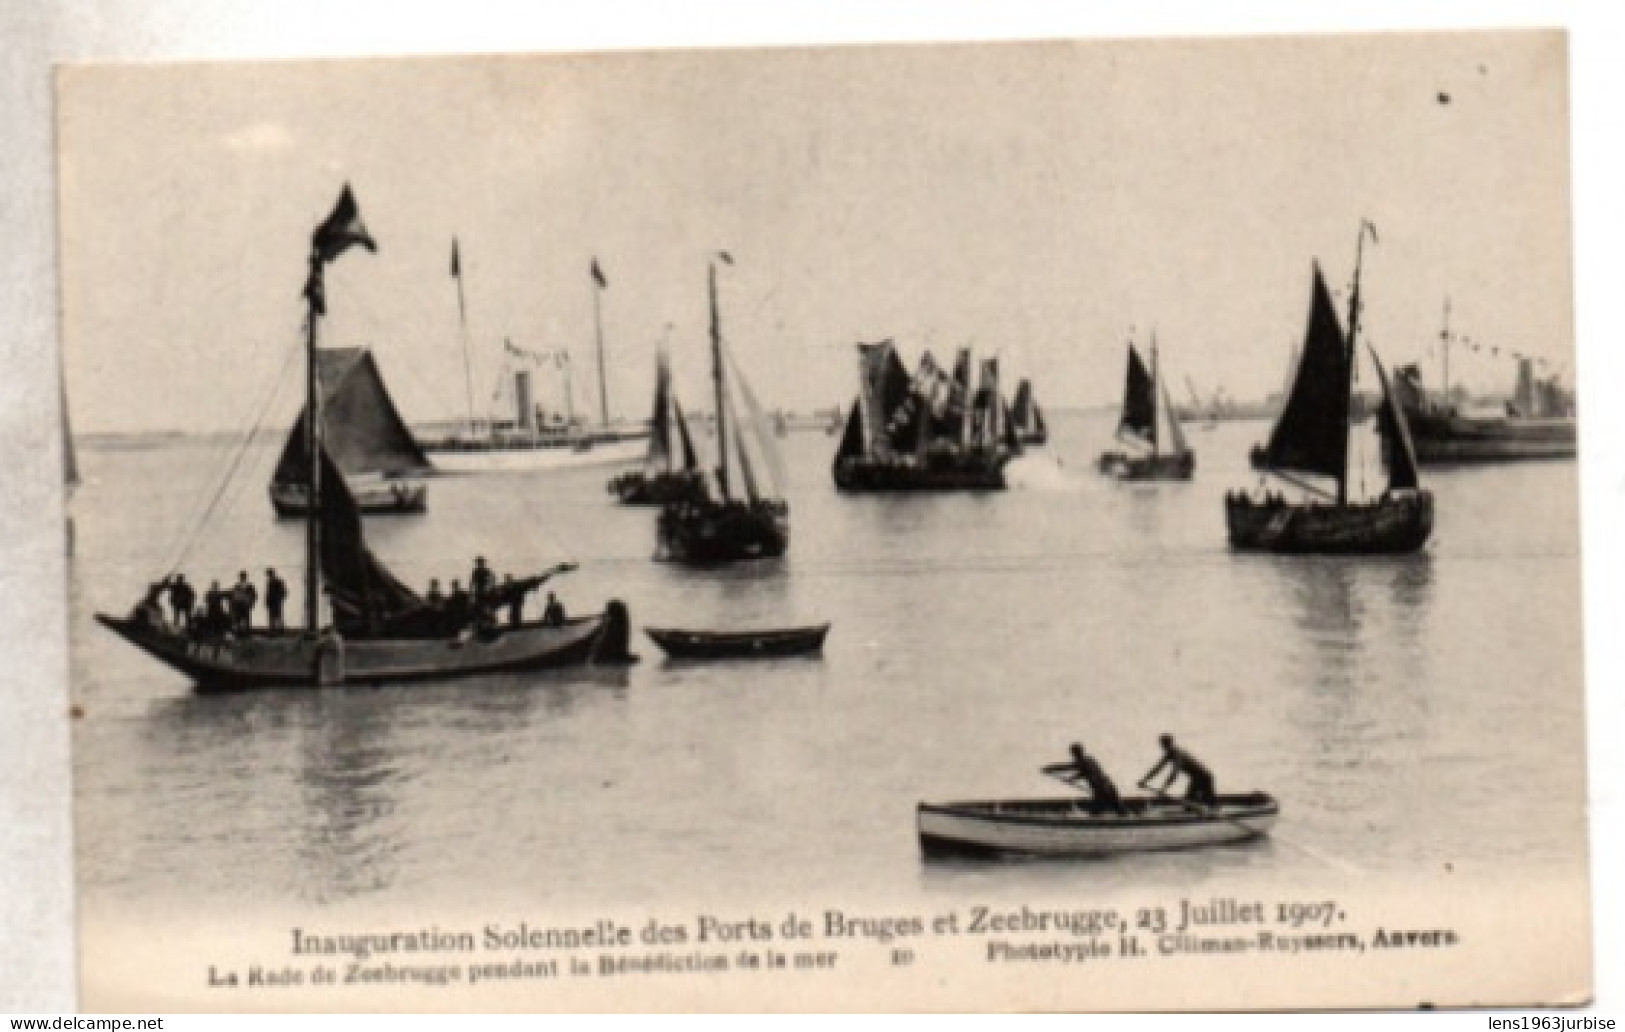 Inauguration Solennelle Des Ports De Bruges Et Zeebrugge , 23 Juillet 1907 - Zeebrugge